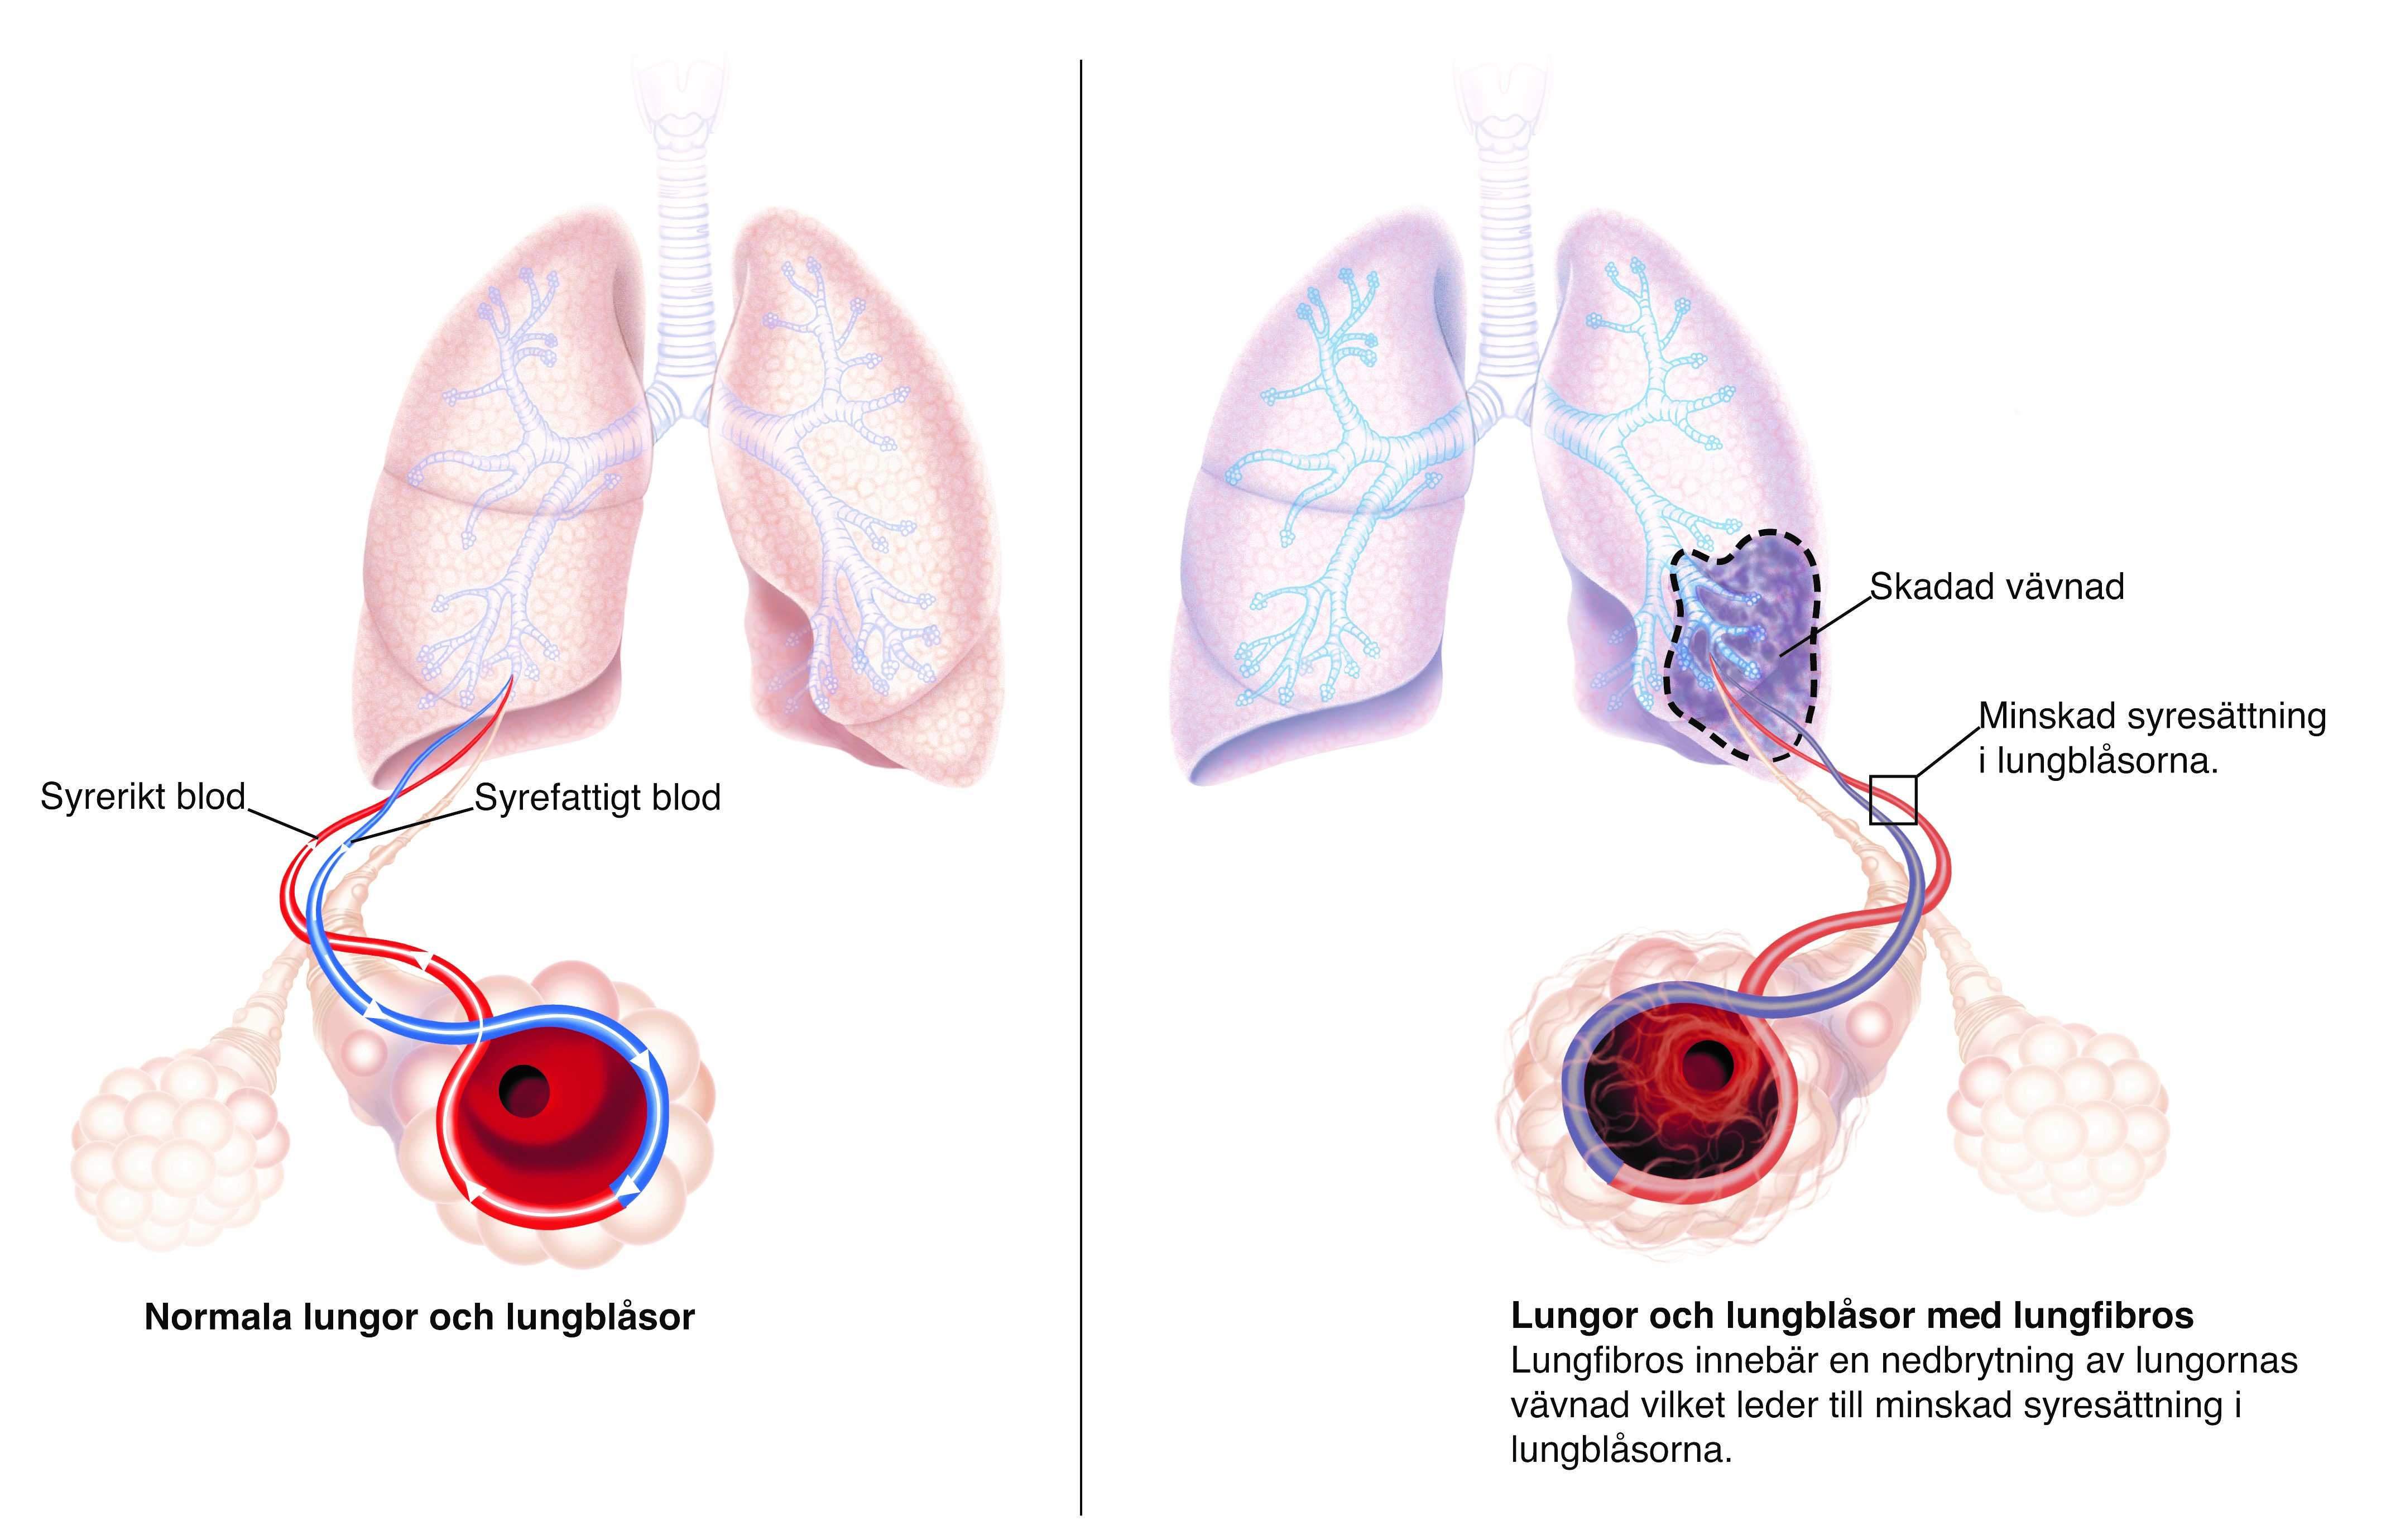 Lungor och lungblåsor drabbade av lungfibros